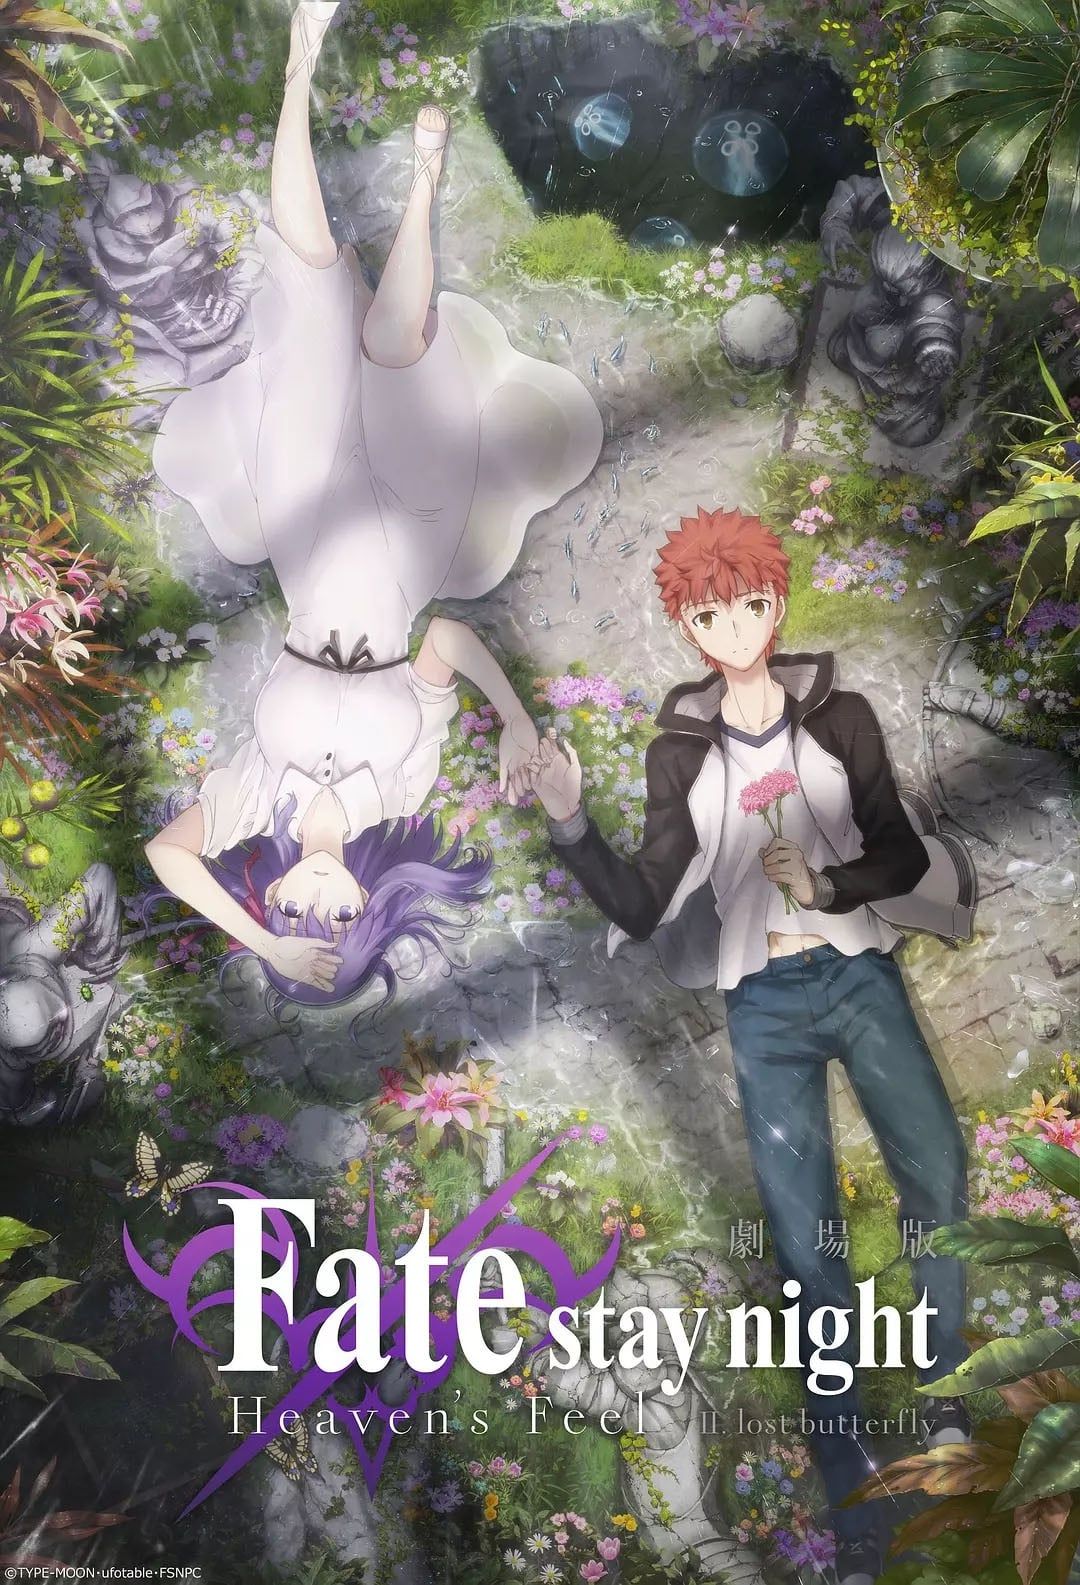 Fate/stay night Movie: Heaven's Feel - I. Presage Flower